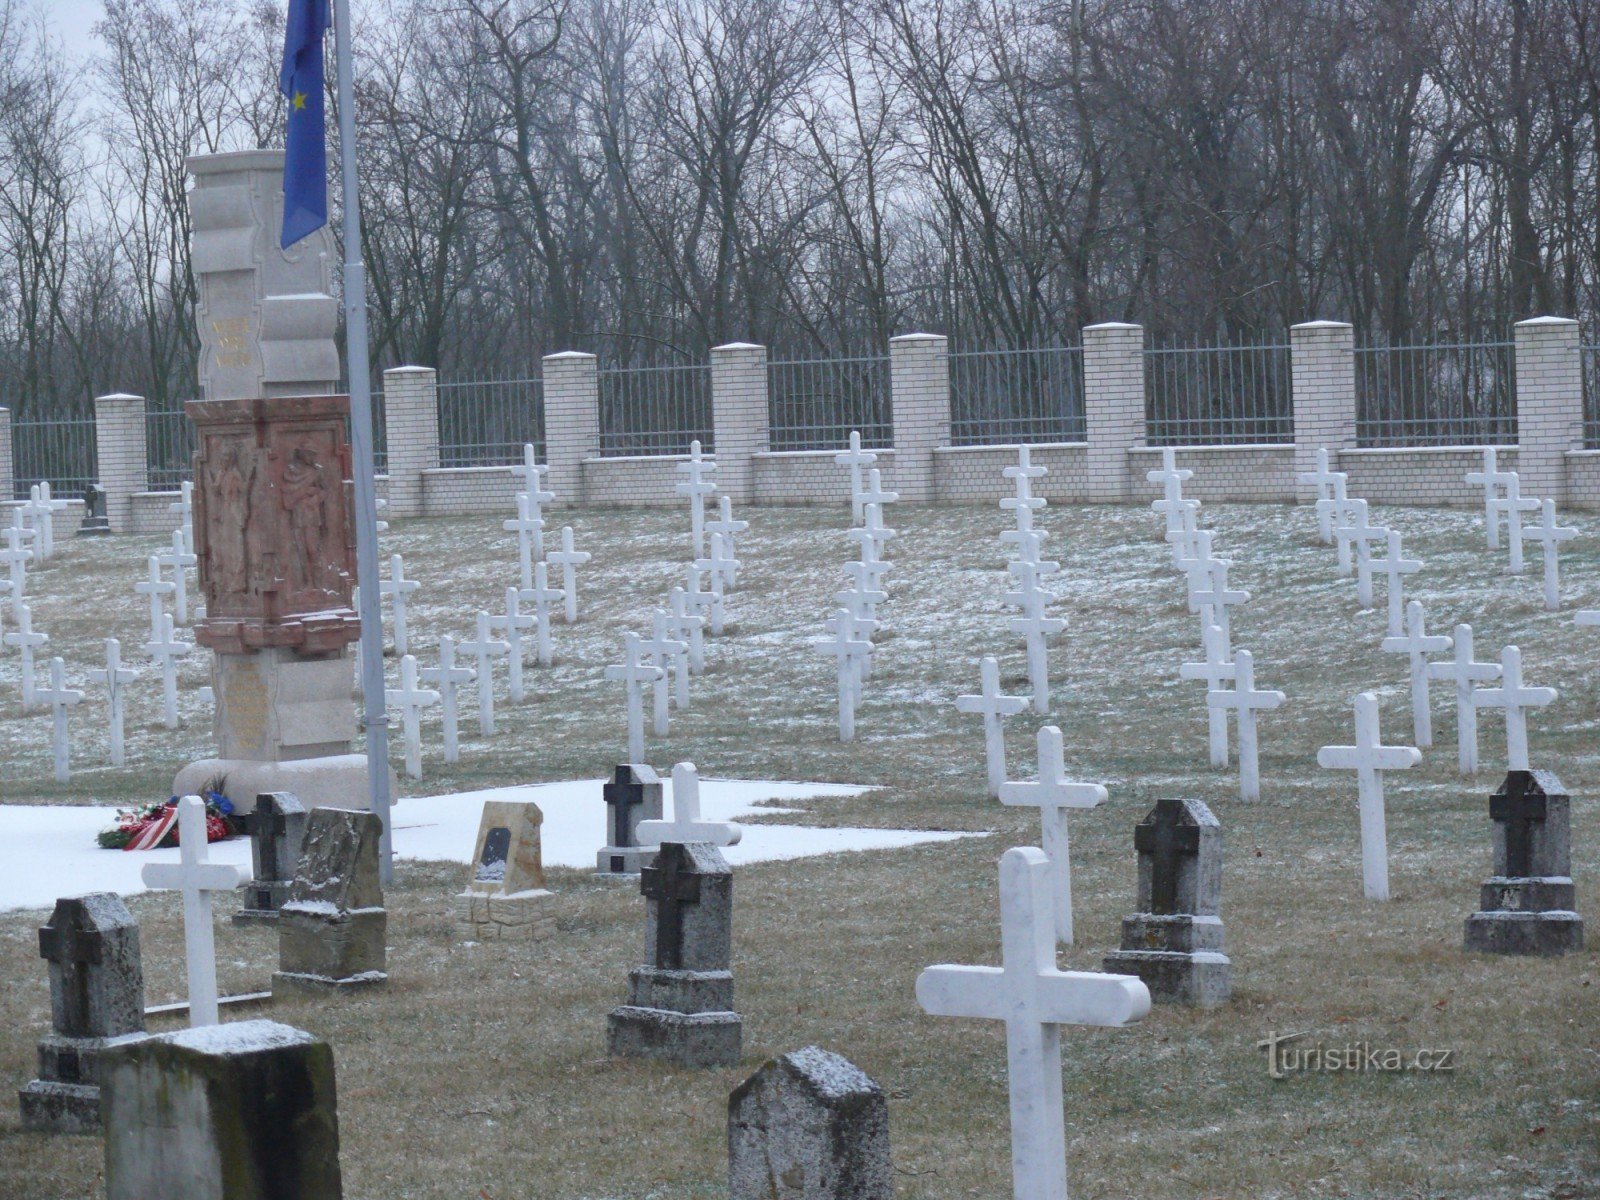 Milovice - Międzynarodowy Cmentarz Wojskowy